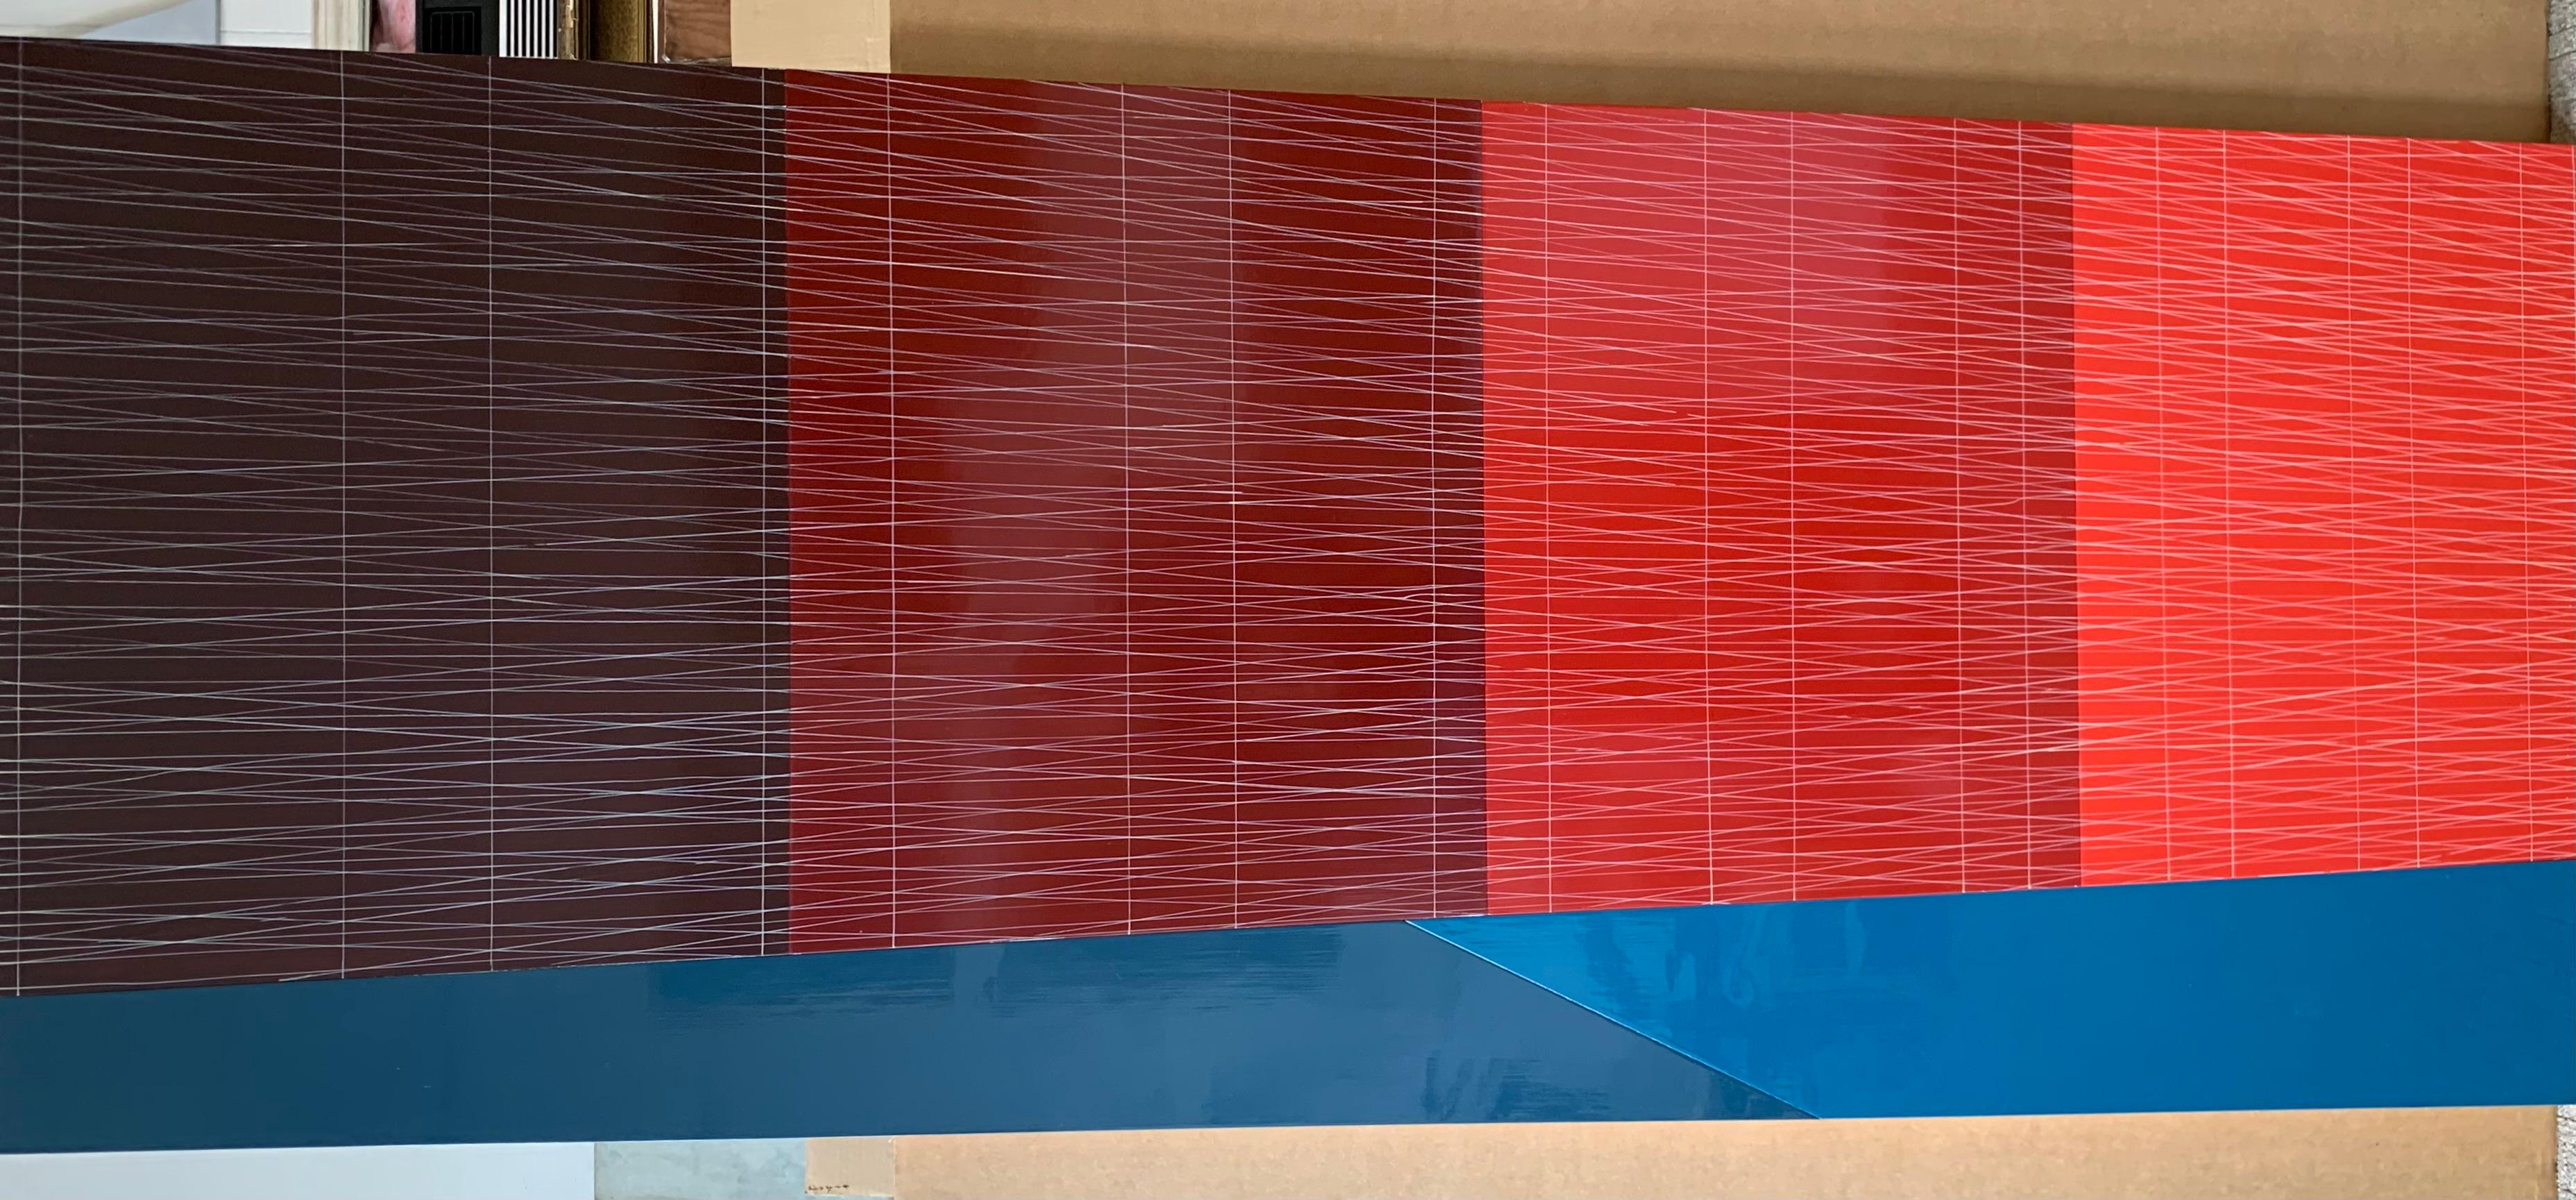 Fond bleu incliné, quatre murs rouges (du ballon au coquelicot)